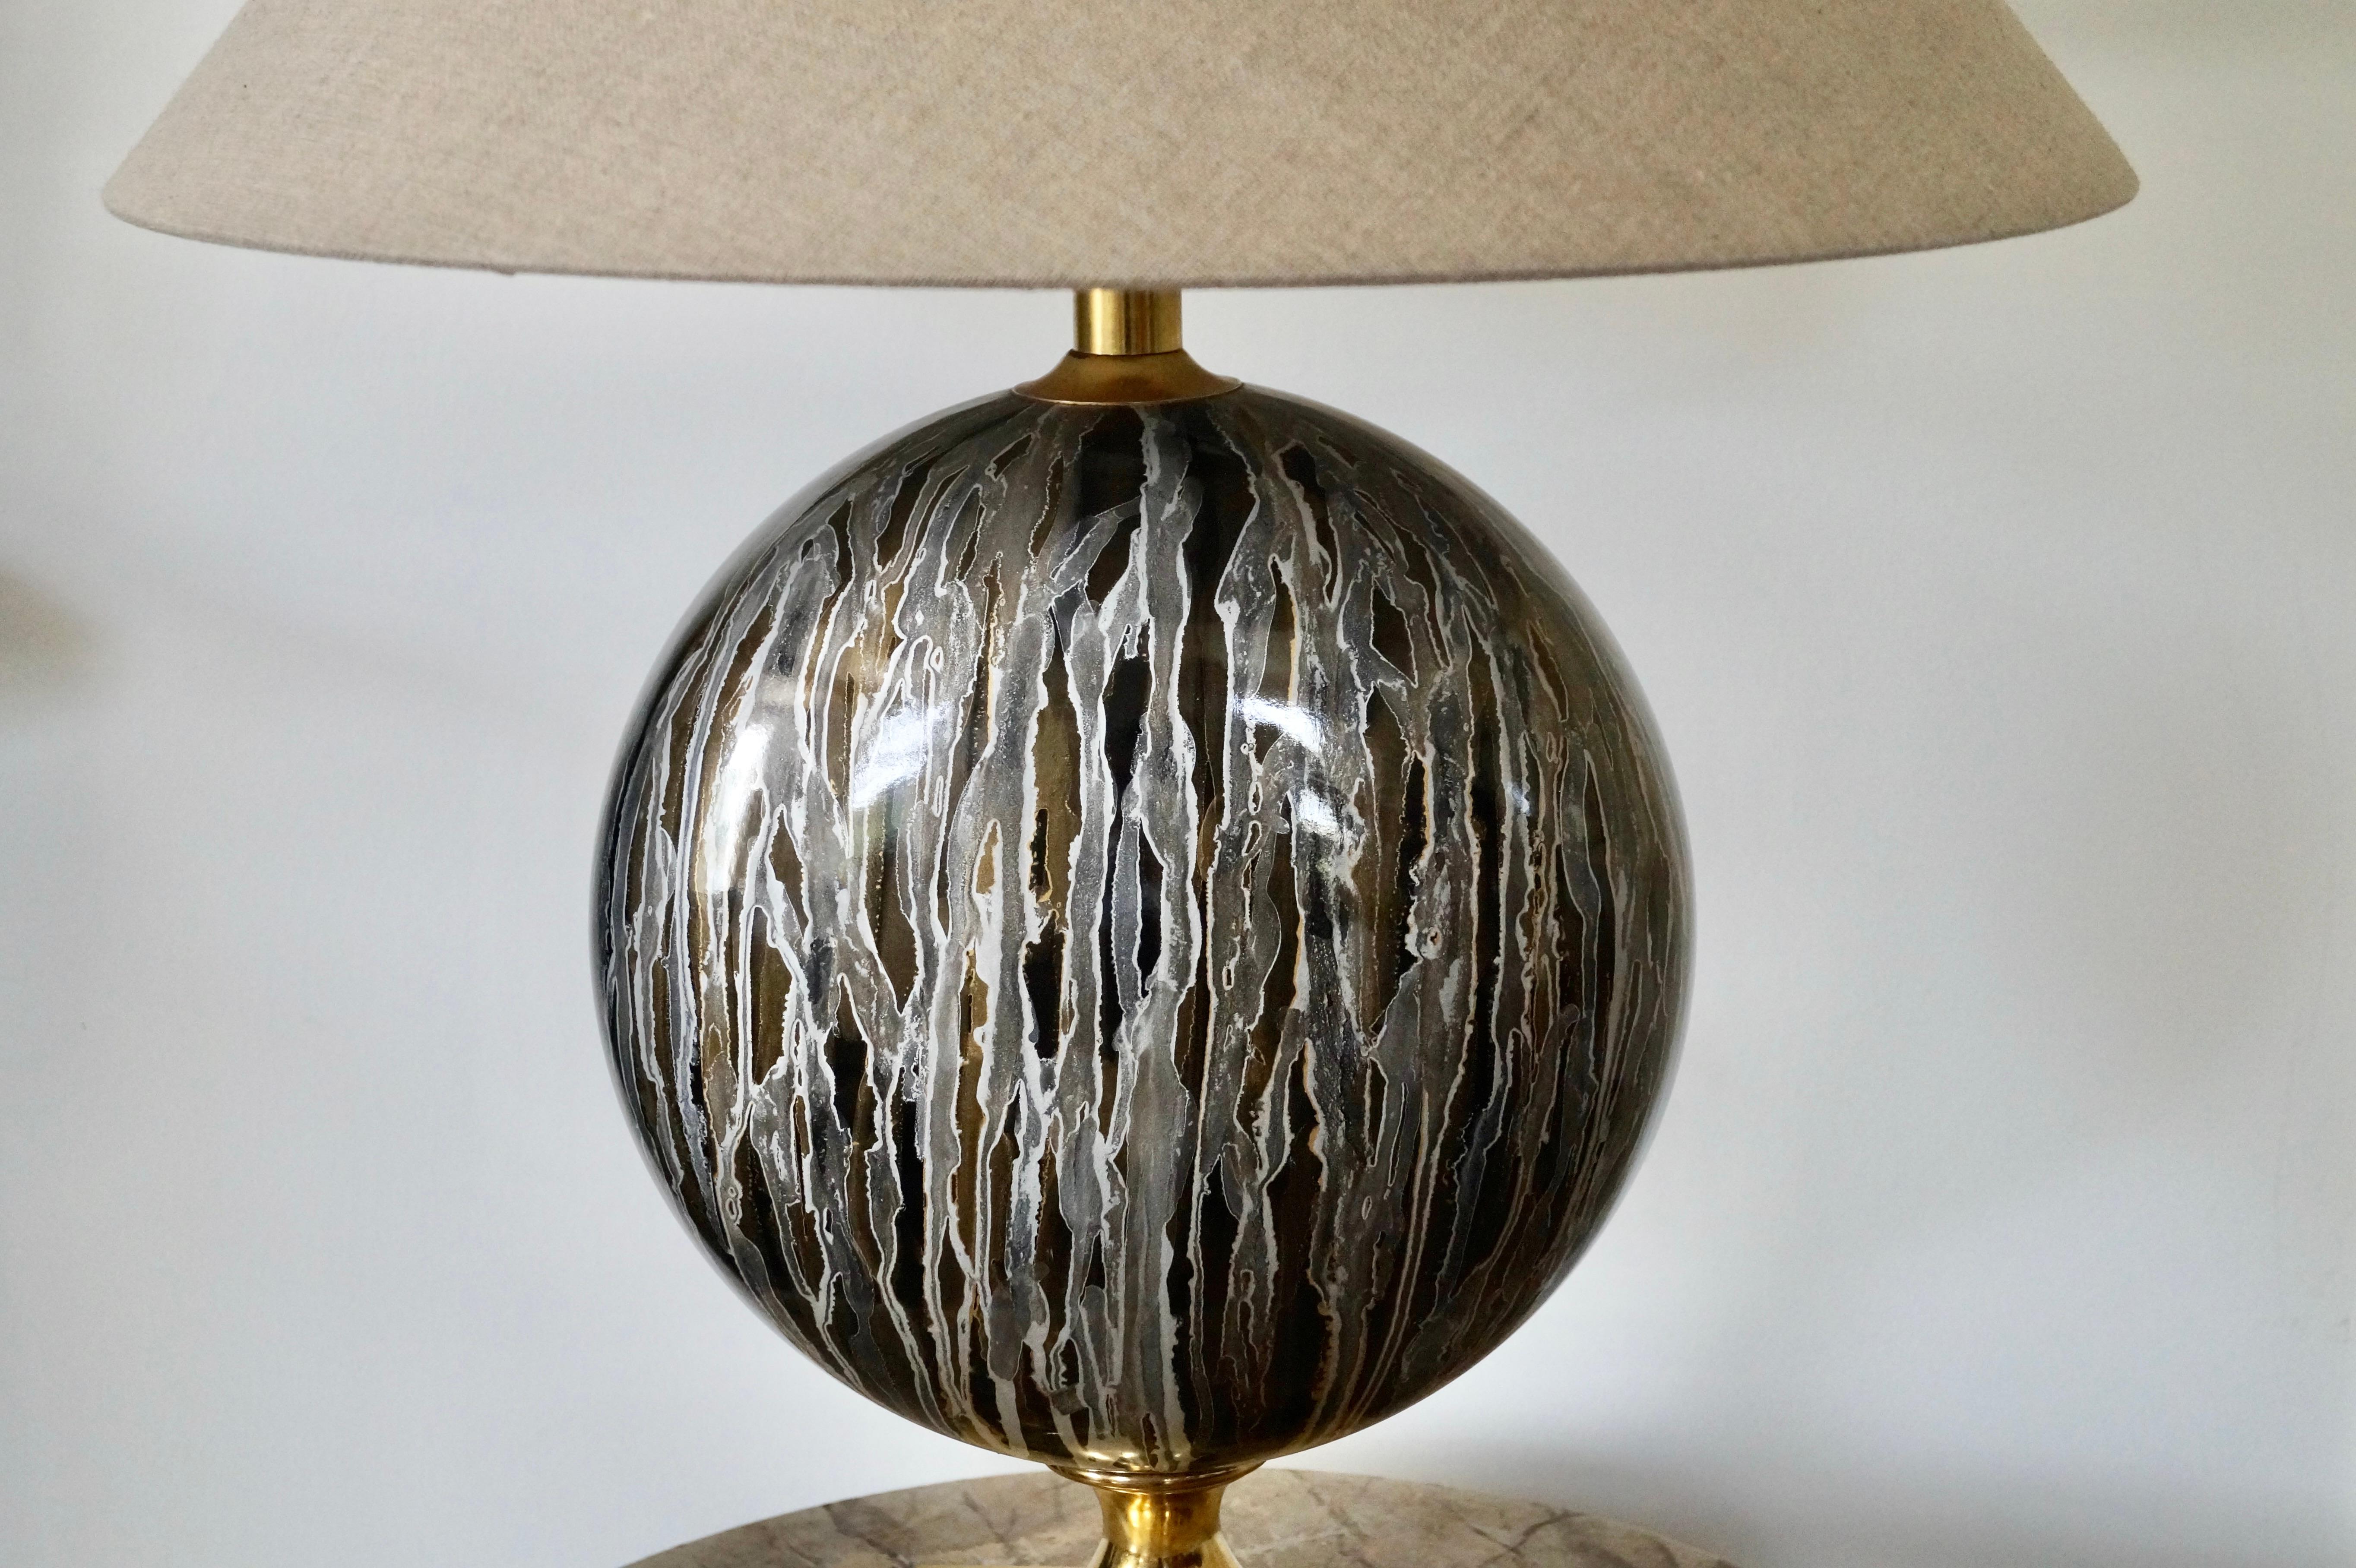 Seltene und wunderbare Tischlampe aus Messing und Keramik.
Design aus Italien in den 1970er Jahren
Designobjekt und kann ein echtes Highlight in Ihrer Einrichtung sein.